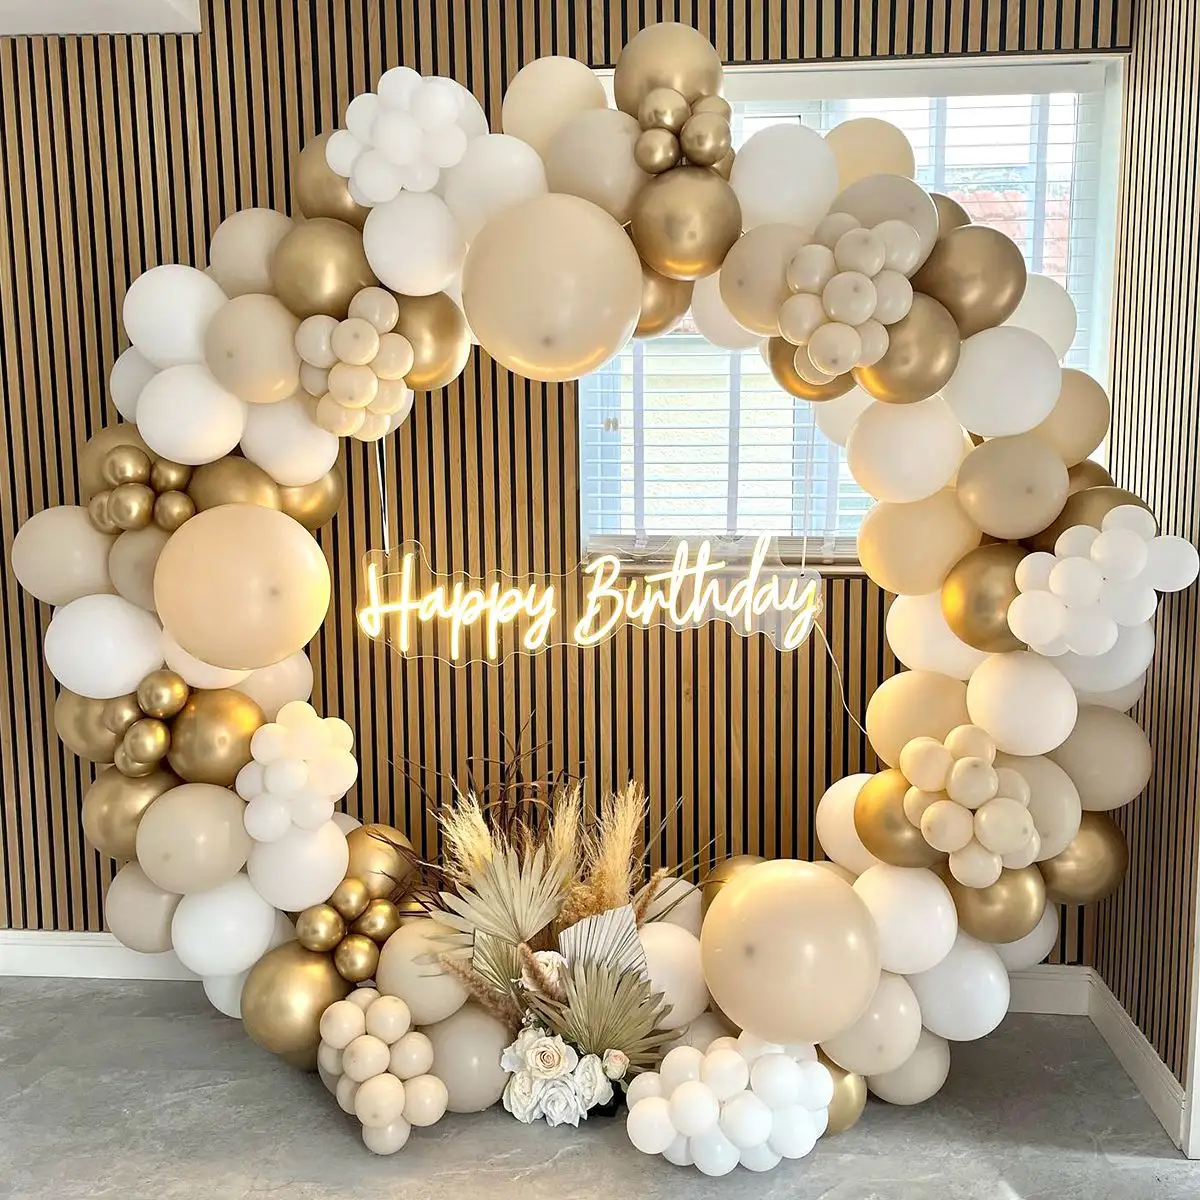 Set Lengkungan Balon Lateks, Set Lengkungan Garland Balon Lateks Metalik untuk Pesta Ulang Tahun Pernikahan Baby Shower